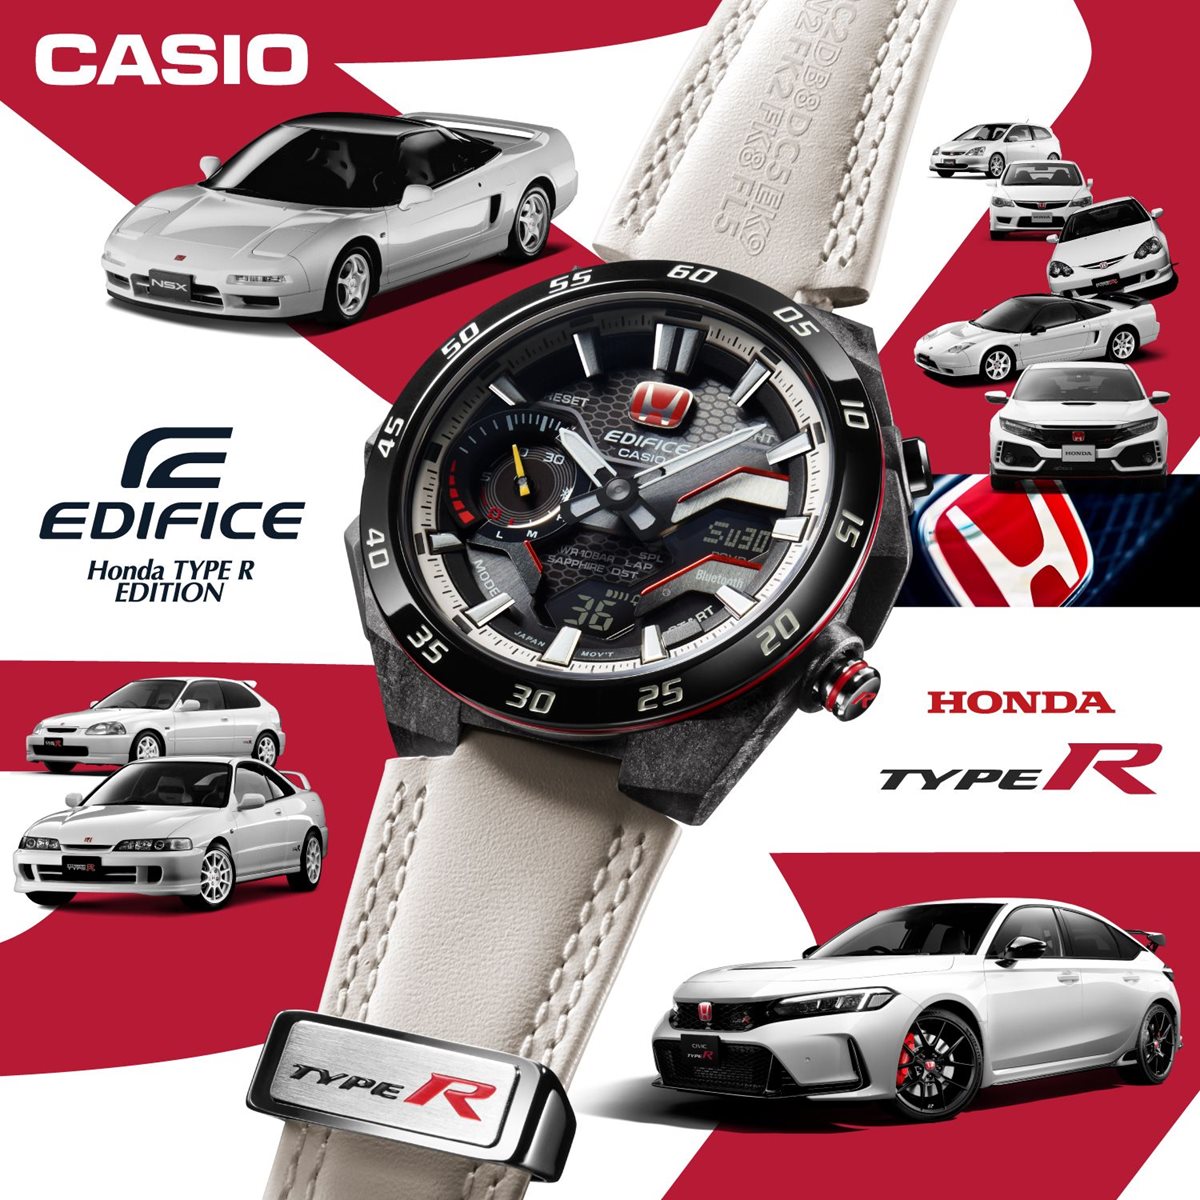 カシオ エディフィス CASIO EDIFICE Honda TYPE R Edition ECB-2200HTR-1AJR アナデジ 限定モデル 腕時計 メンズ クロノグラフ スマートフォンリンク 赤バッジ